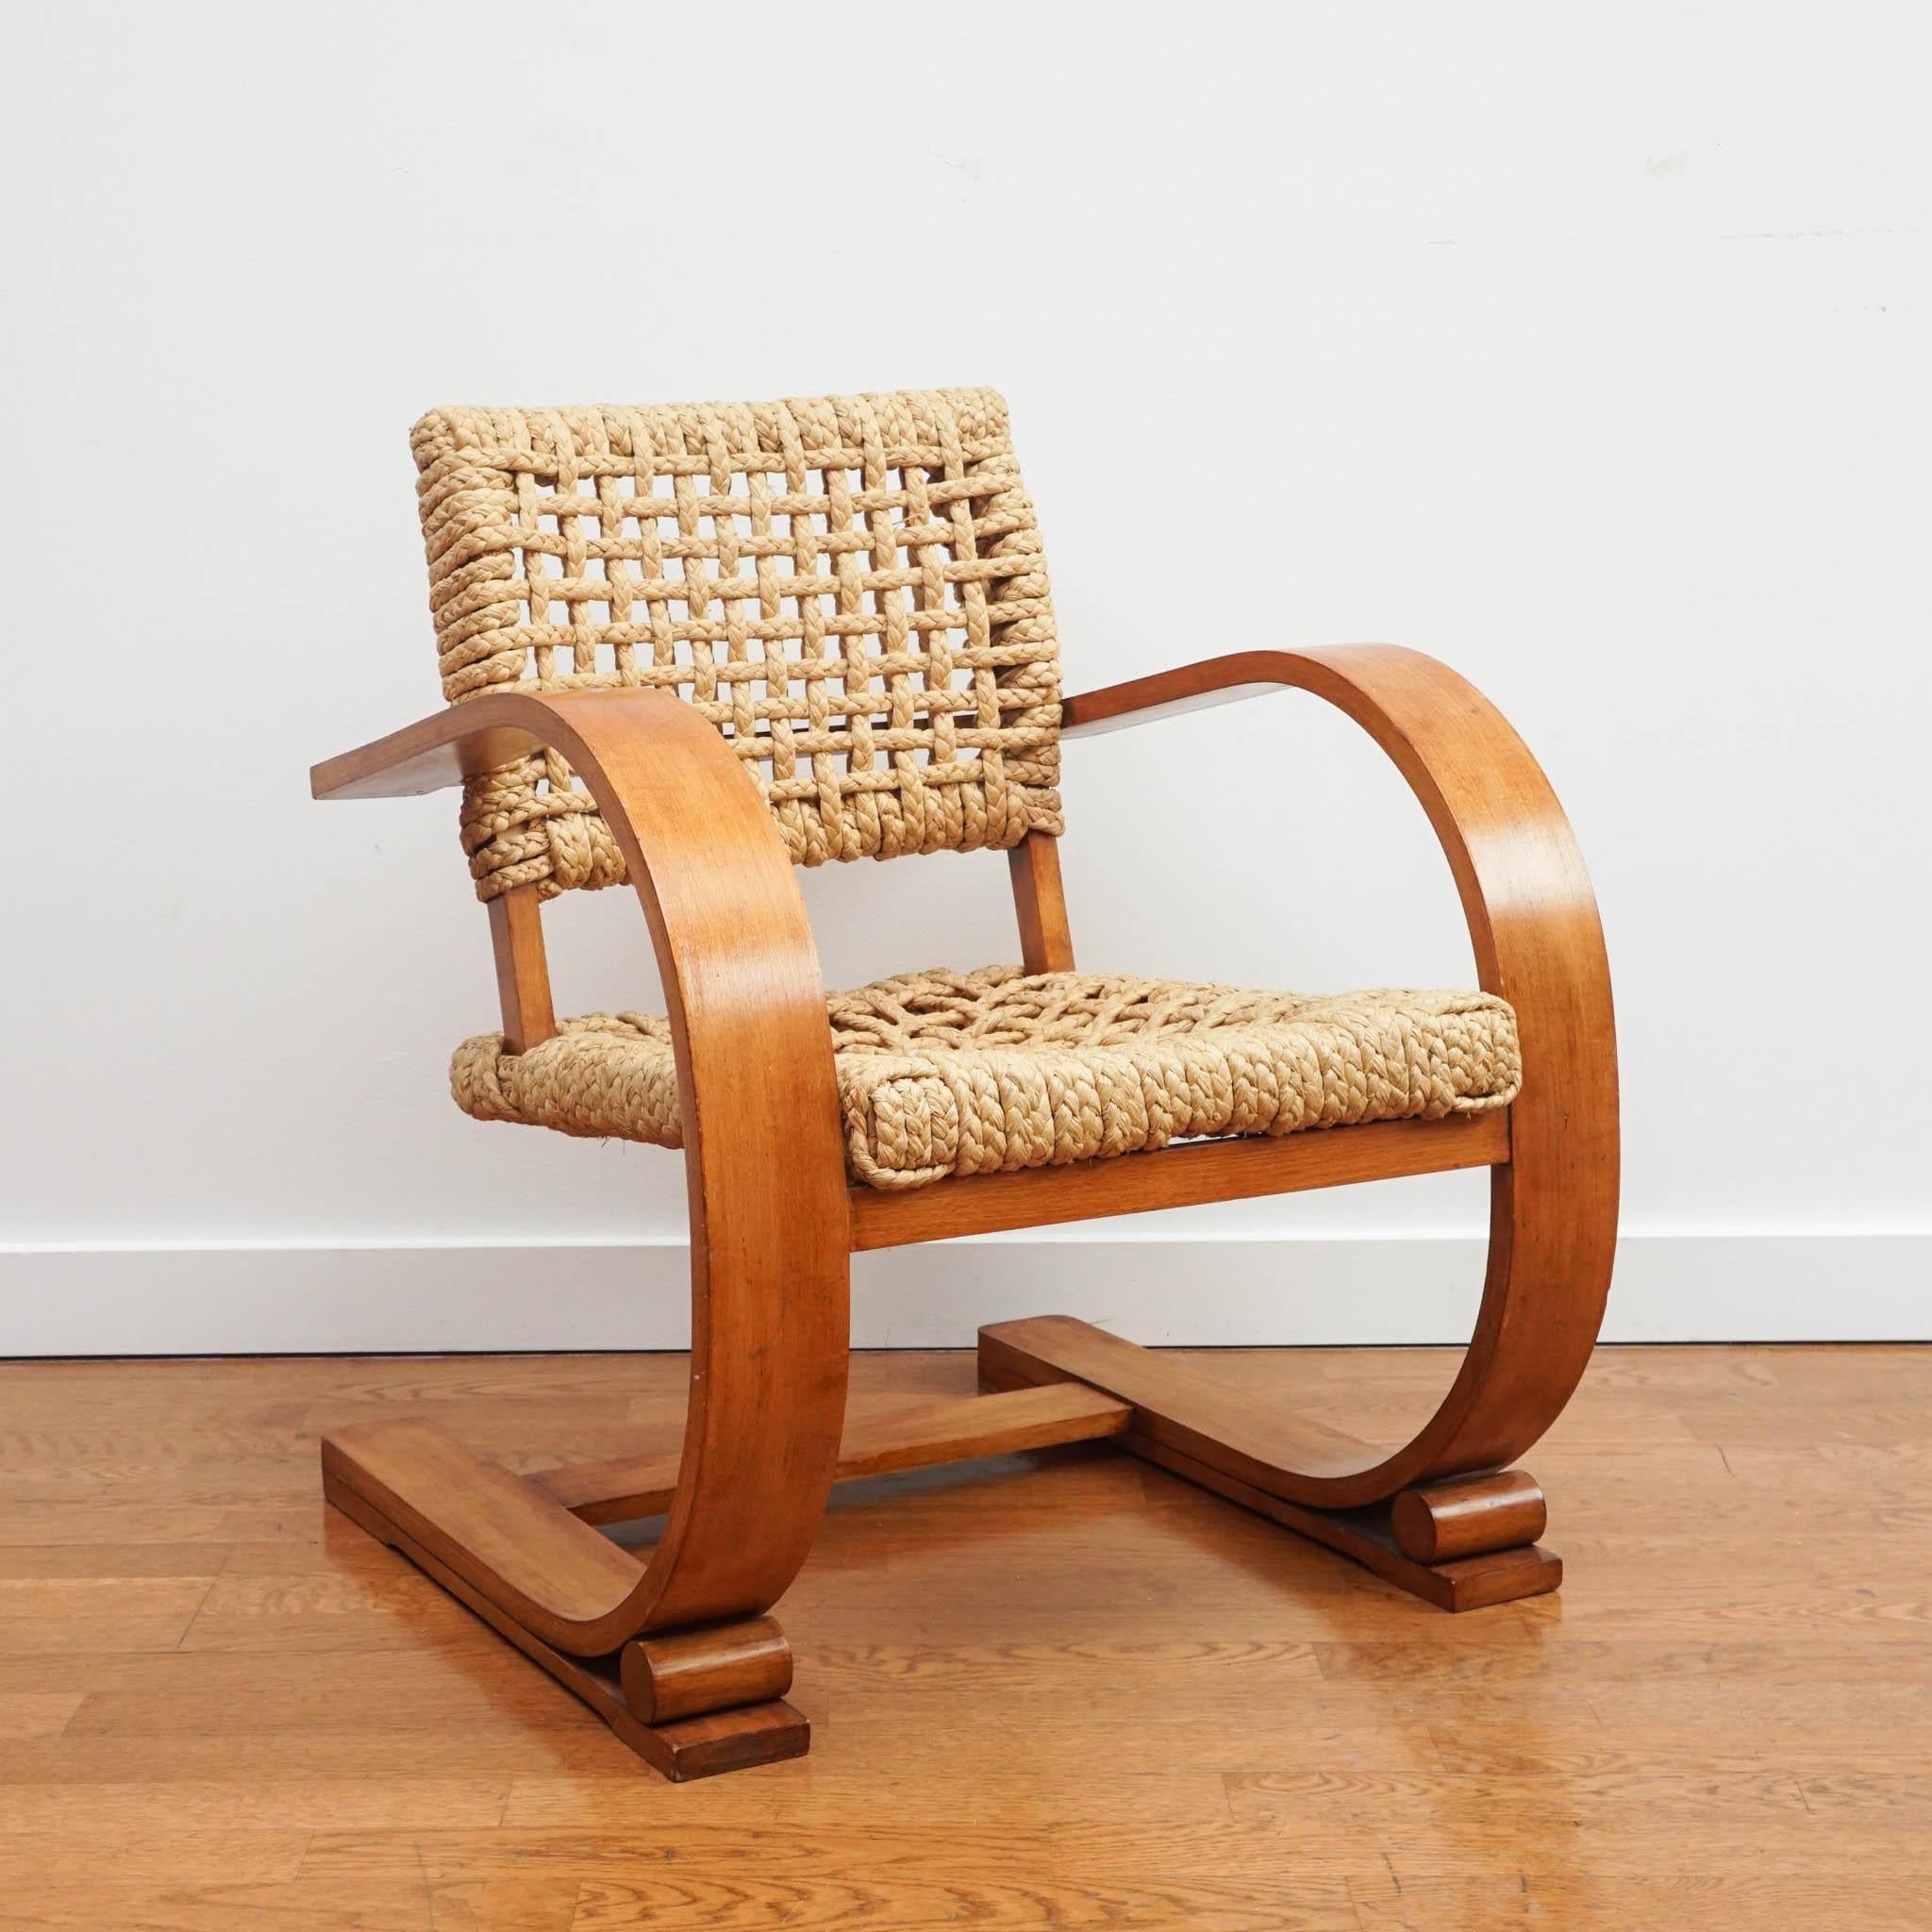 Chaises mûres françaises du milieu du siècle par Adrien Audox et Frida Minet pour Vibo. Magnifiques sièges en bois courbé et en corde tressée d'origine.